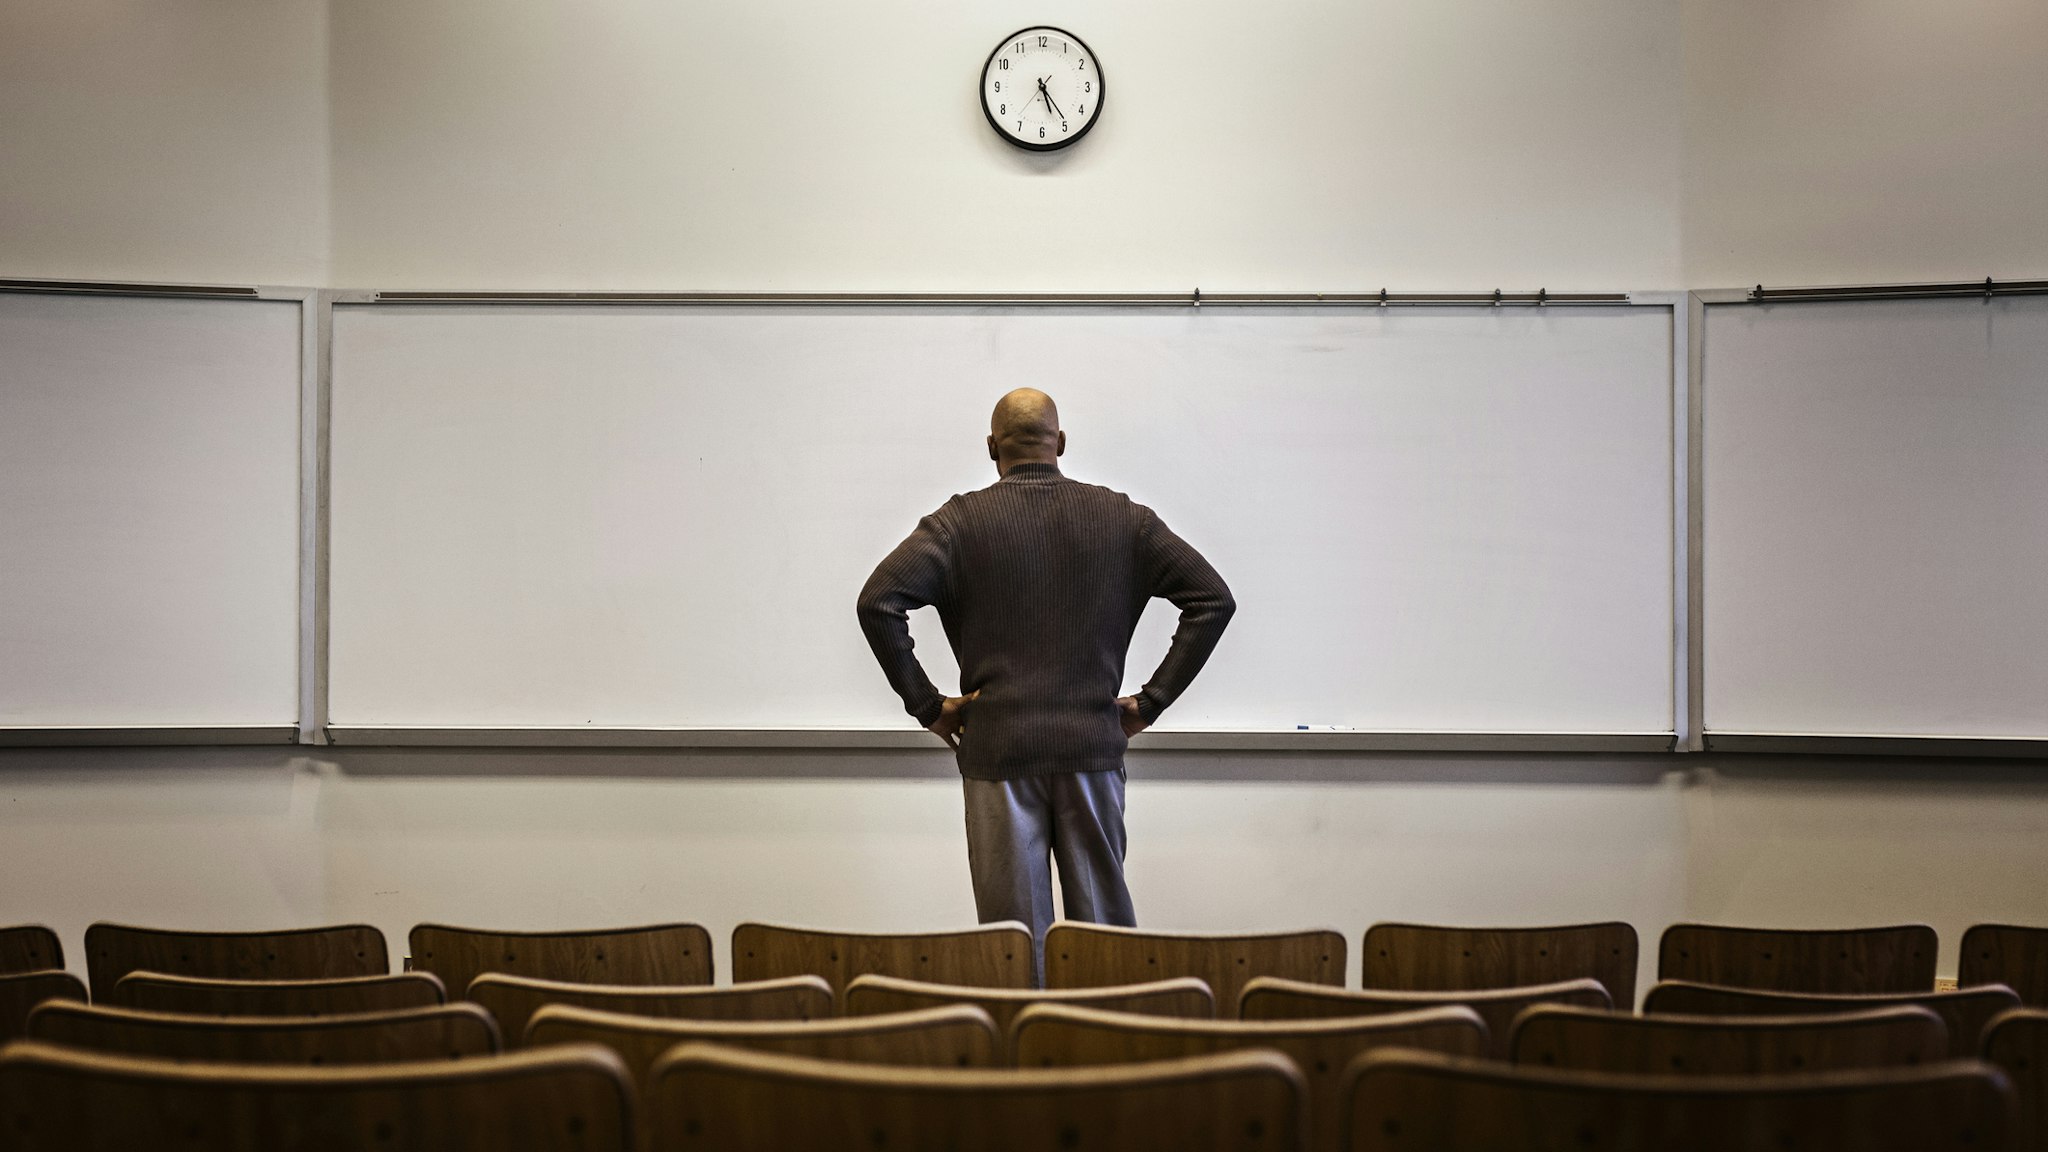 Professor standing in empty classroom - stock photo